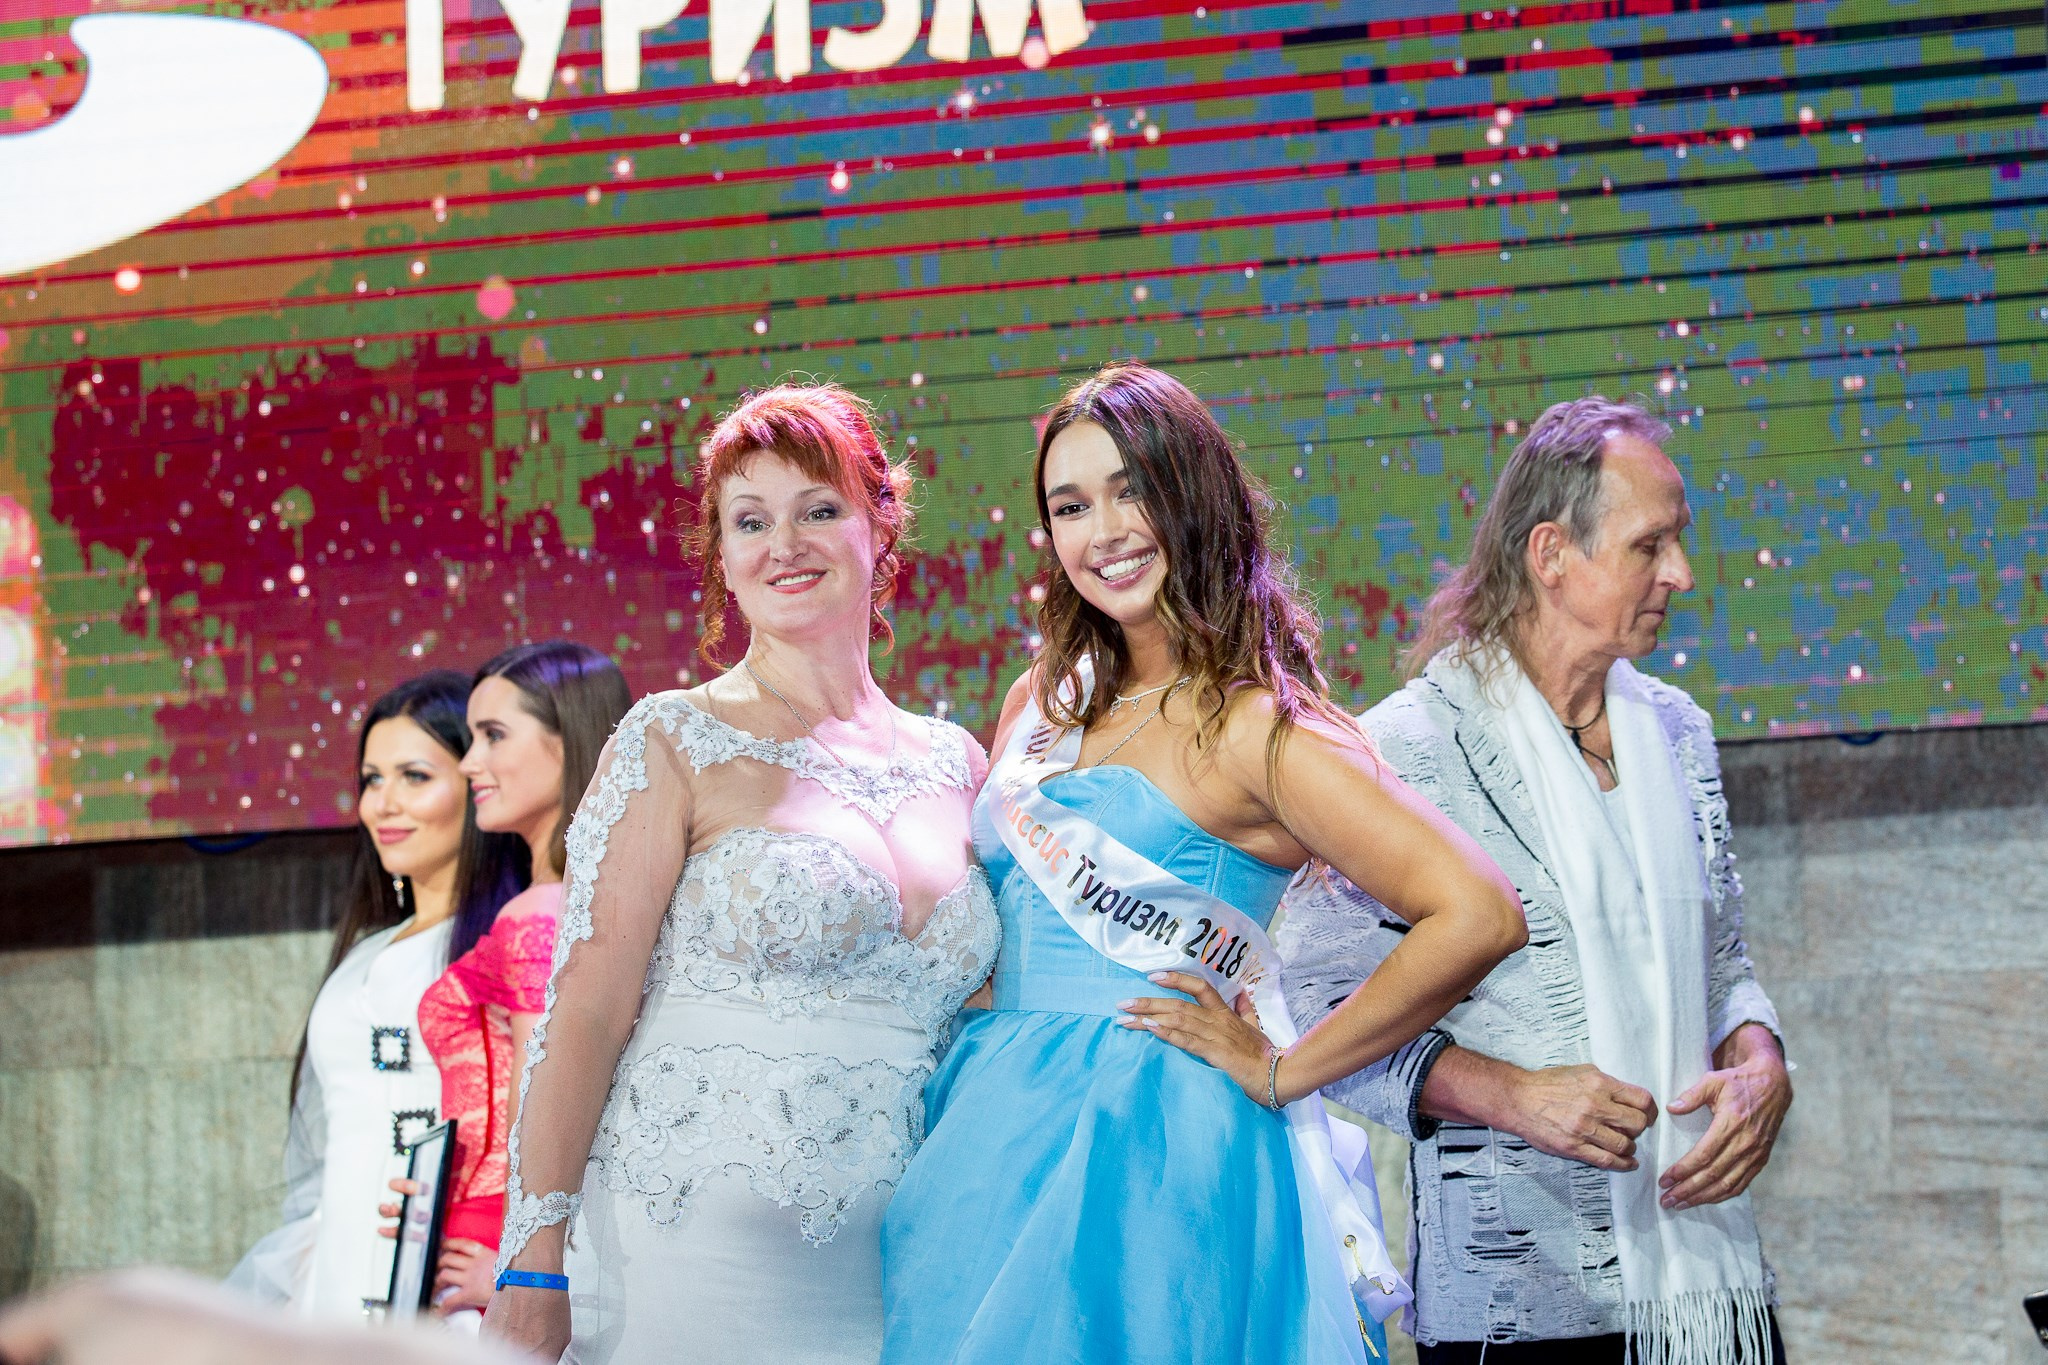 Титул второй мисс вместе с Земфирой приехал в Тюмень, первое и третье места отправились в Москву